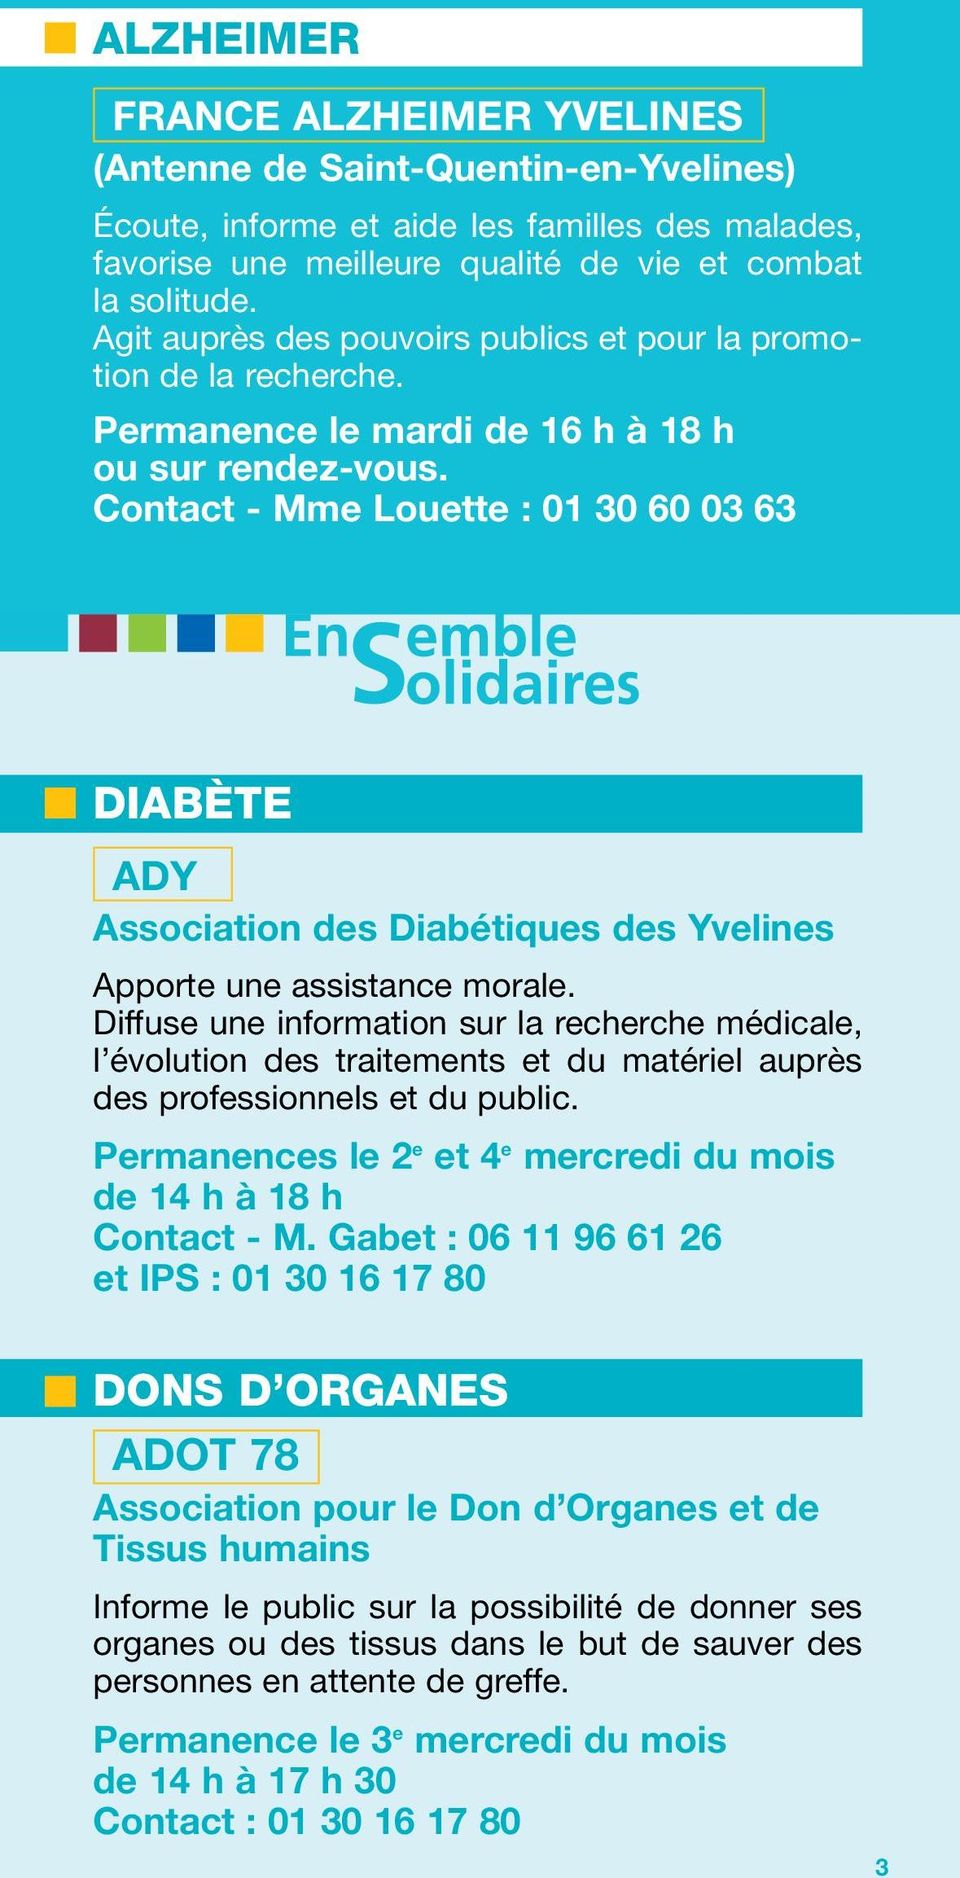 Contact - Mme Louette : 01 30 60 03 63 DIABÈTE ADY Association des Diabétiques des Yvelines Apporte une assistance morale.